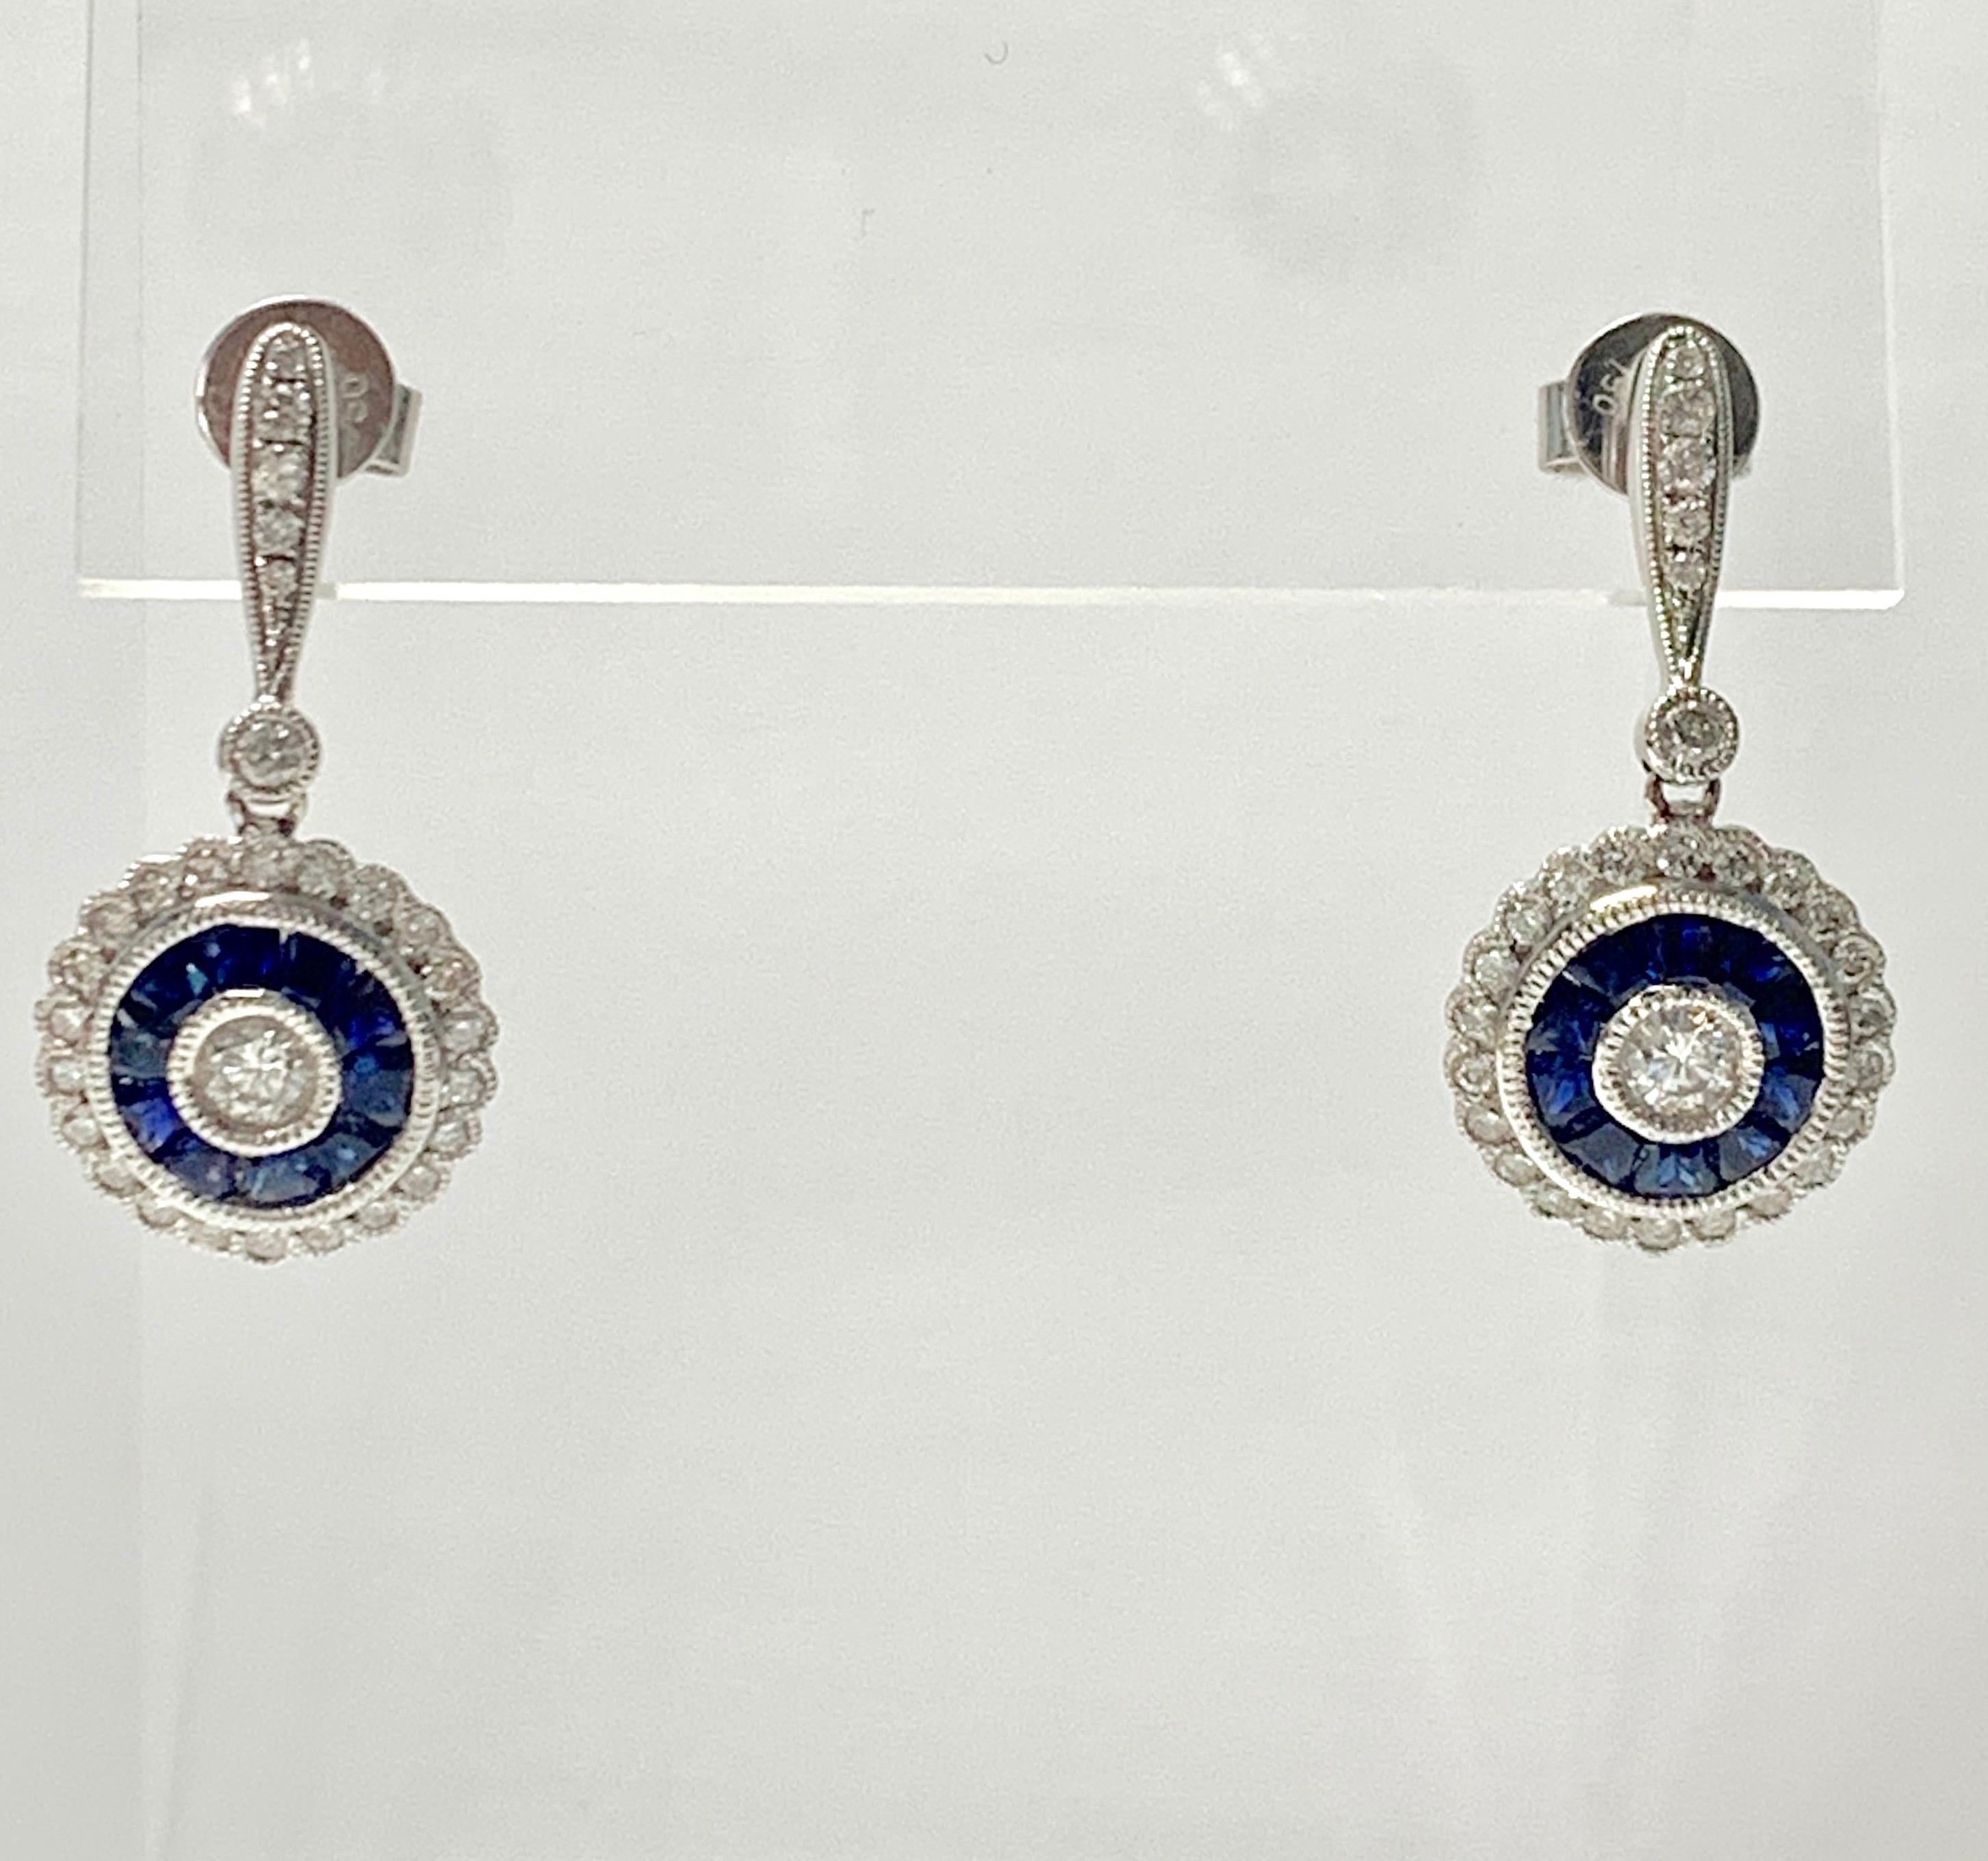 Boucles d'oreilles pendantes en saphir bleu et diamant, fabriquées à la main en platine et or blanc 18 carats. 
Les détails sont les suivants :
Poids du diamant : 1 carat (couleur G et VS2) 
Métal : platine et or blanc 18k 
Mesures : 1 pouce de long